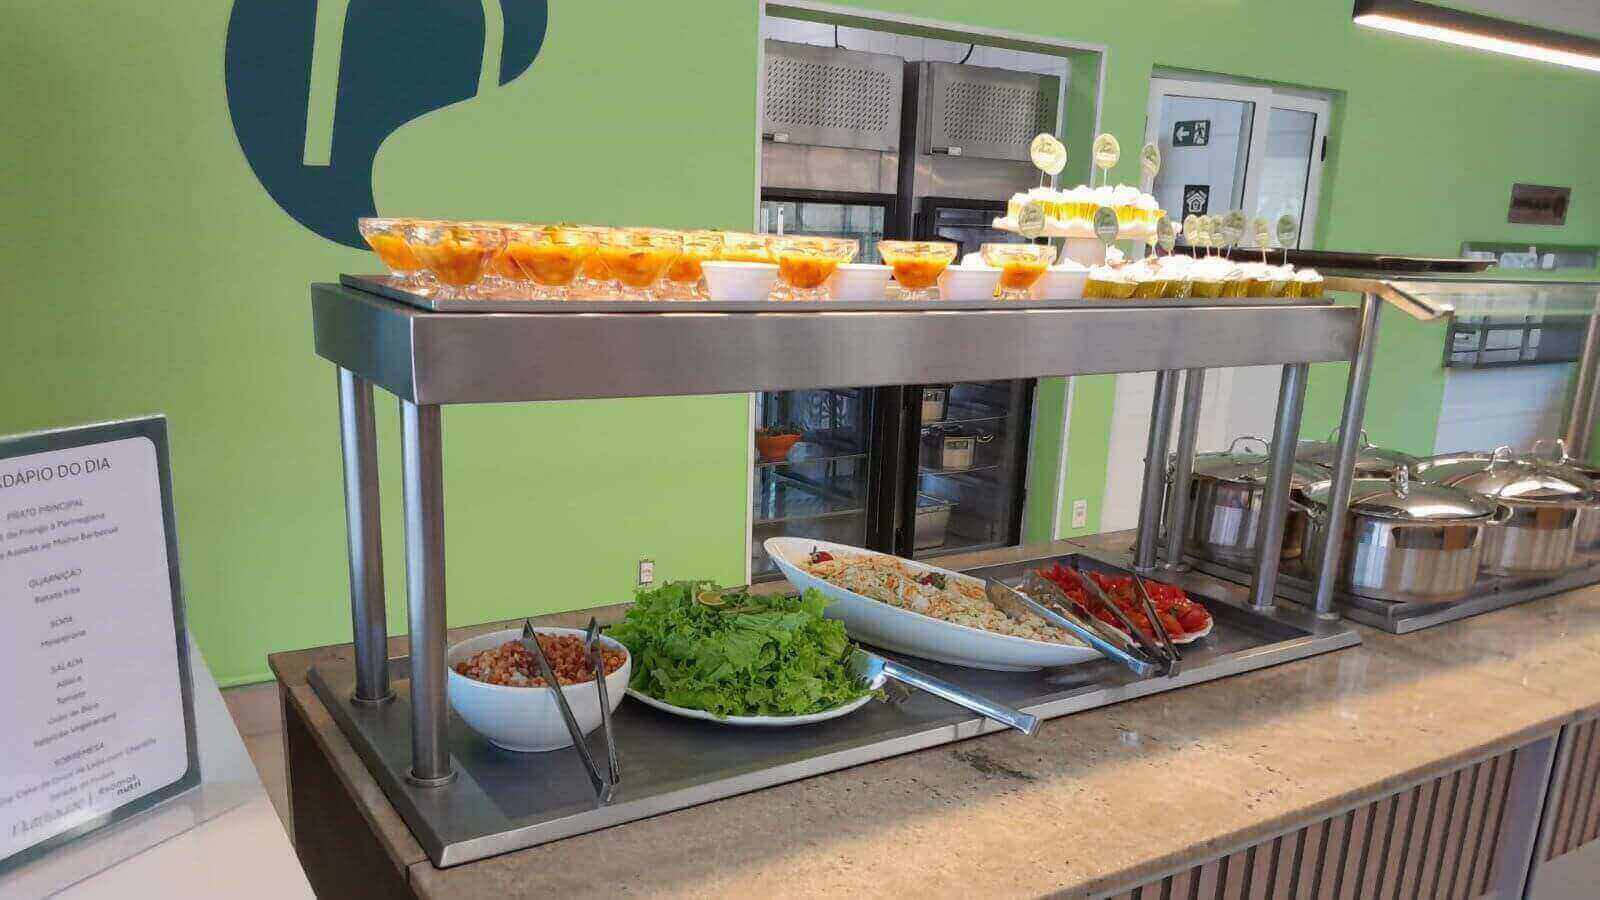 Buffet de saladas e sobremesas em restaurante, com cardápio do dia exposto, destacando ambiente moderno e organizado.